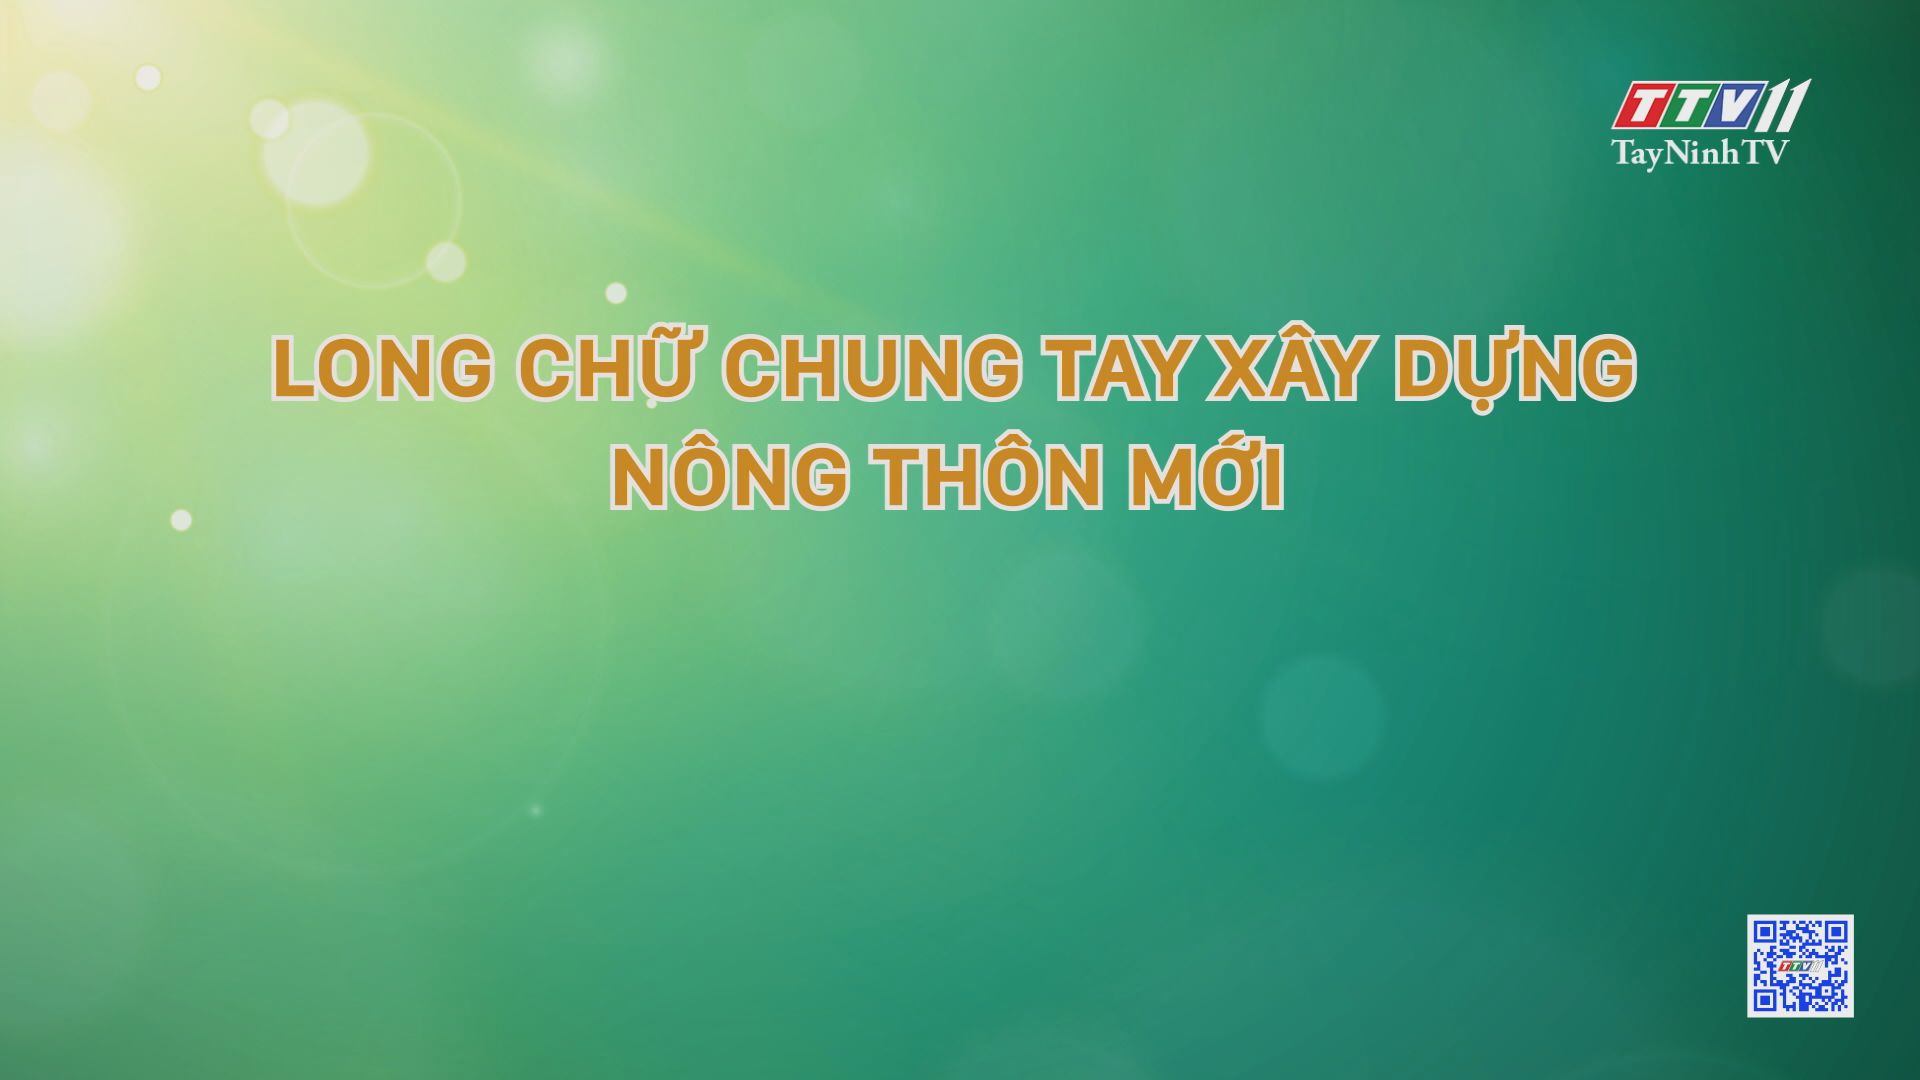 Long chữ chung tay xây dựng nông thôn mới | Nông nghiệp Tây Ninh | TayNinhTV